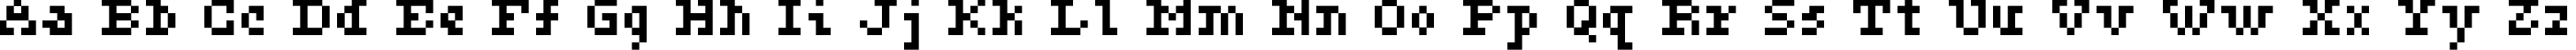 Пример написания английского алфавита шрифтом ceriph 05_55